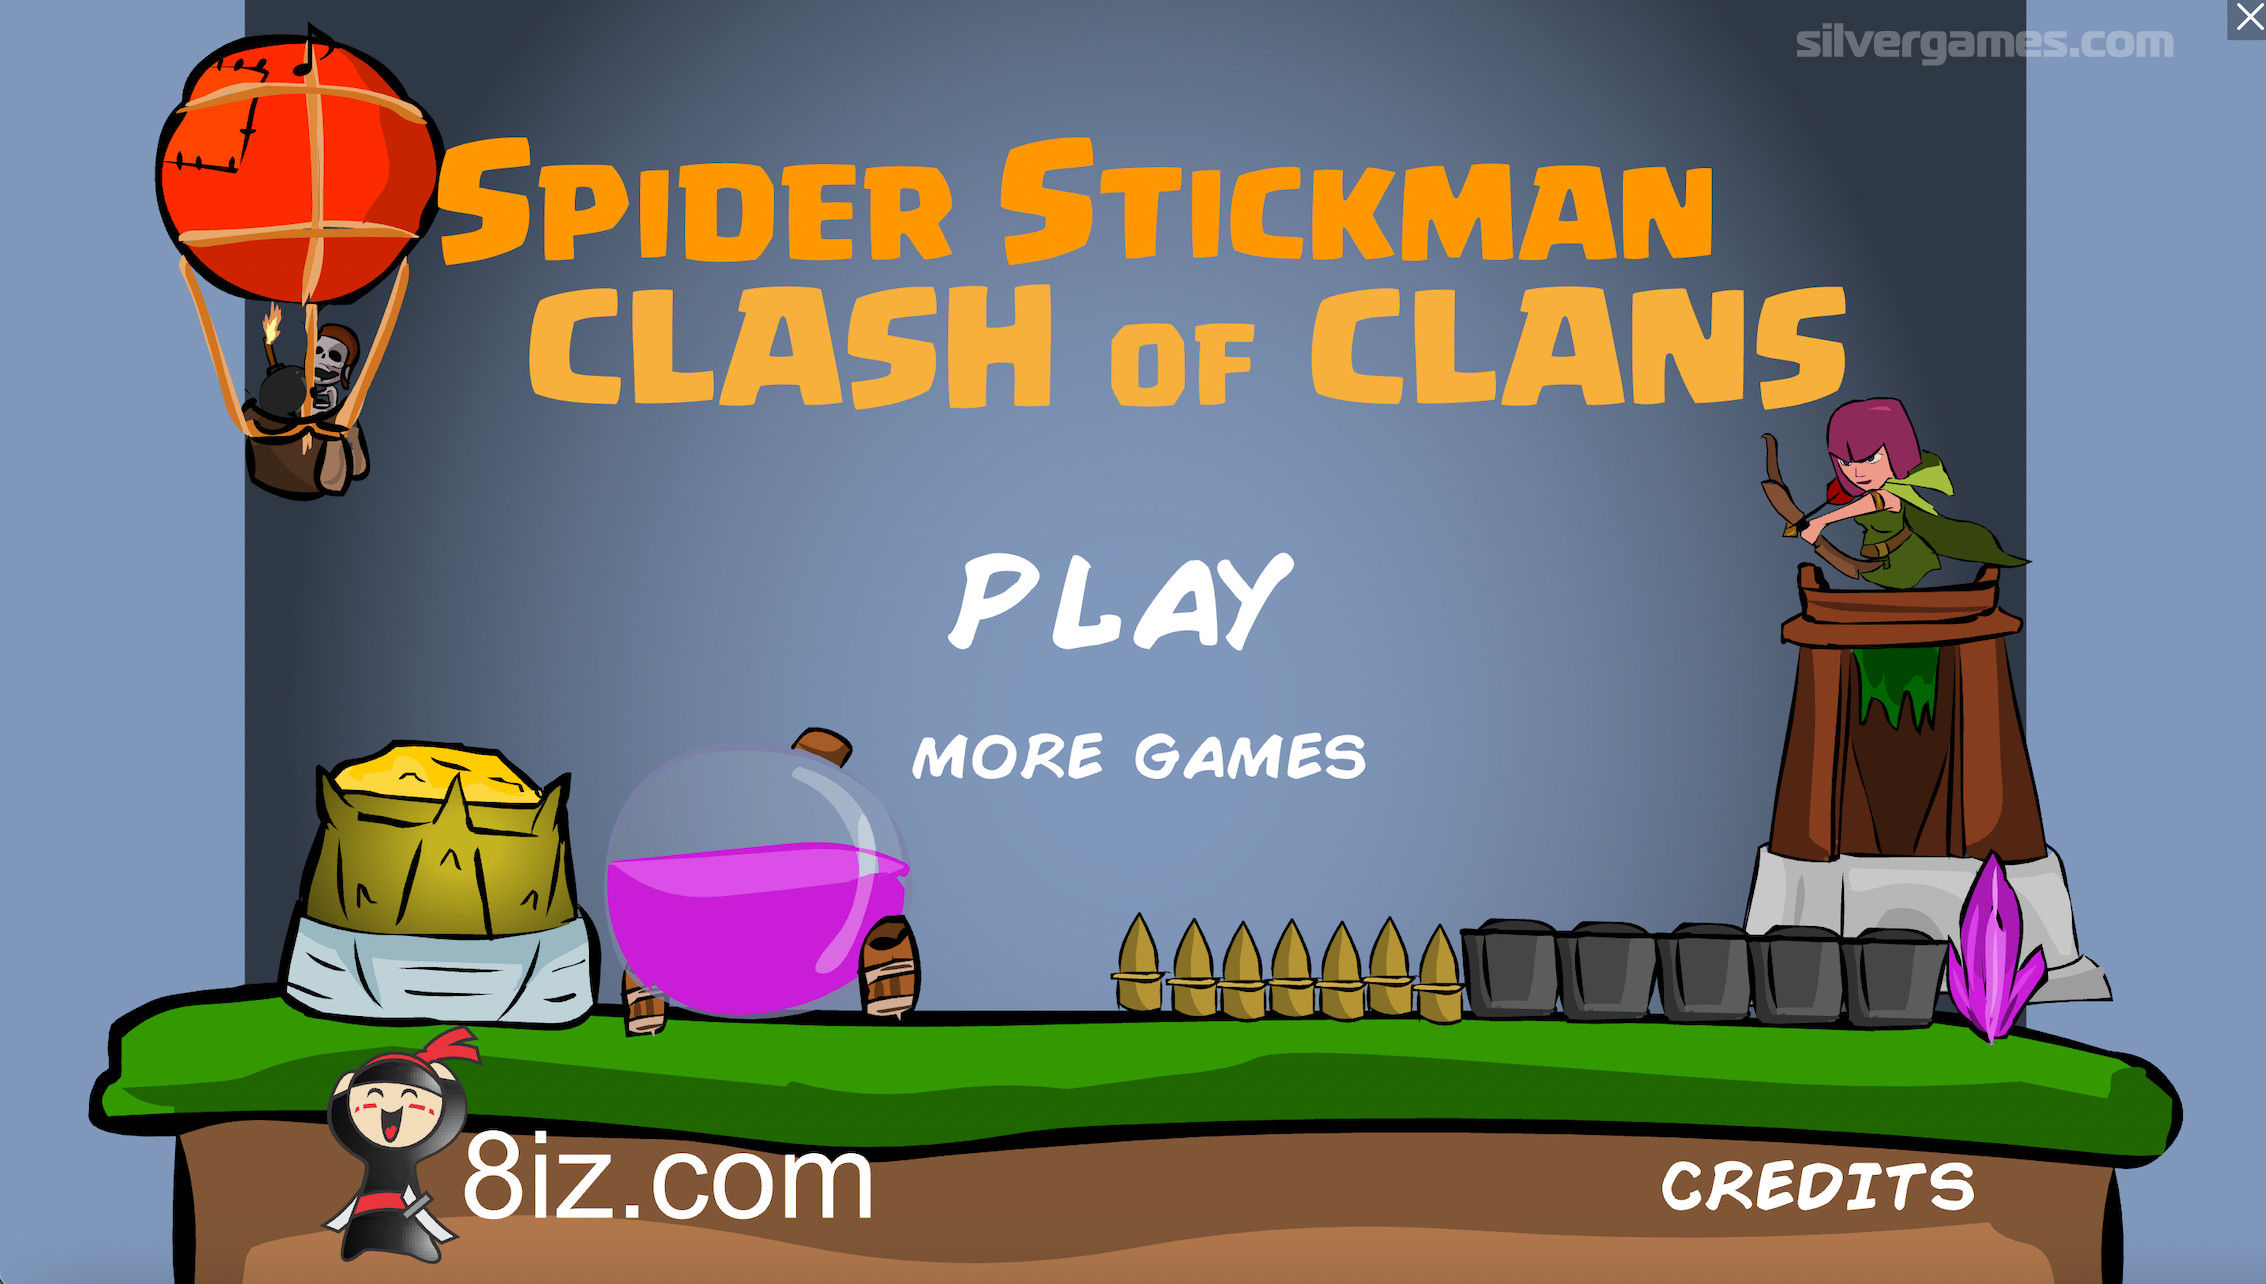 Stickman Supreme Duelist 2 - Play Online on SilverGames 🕹️